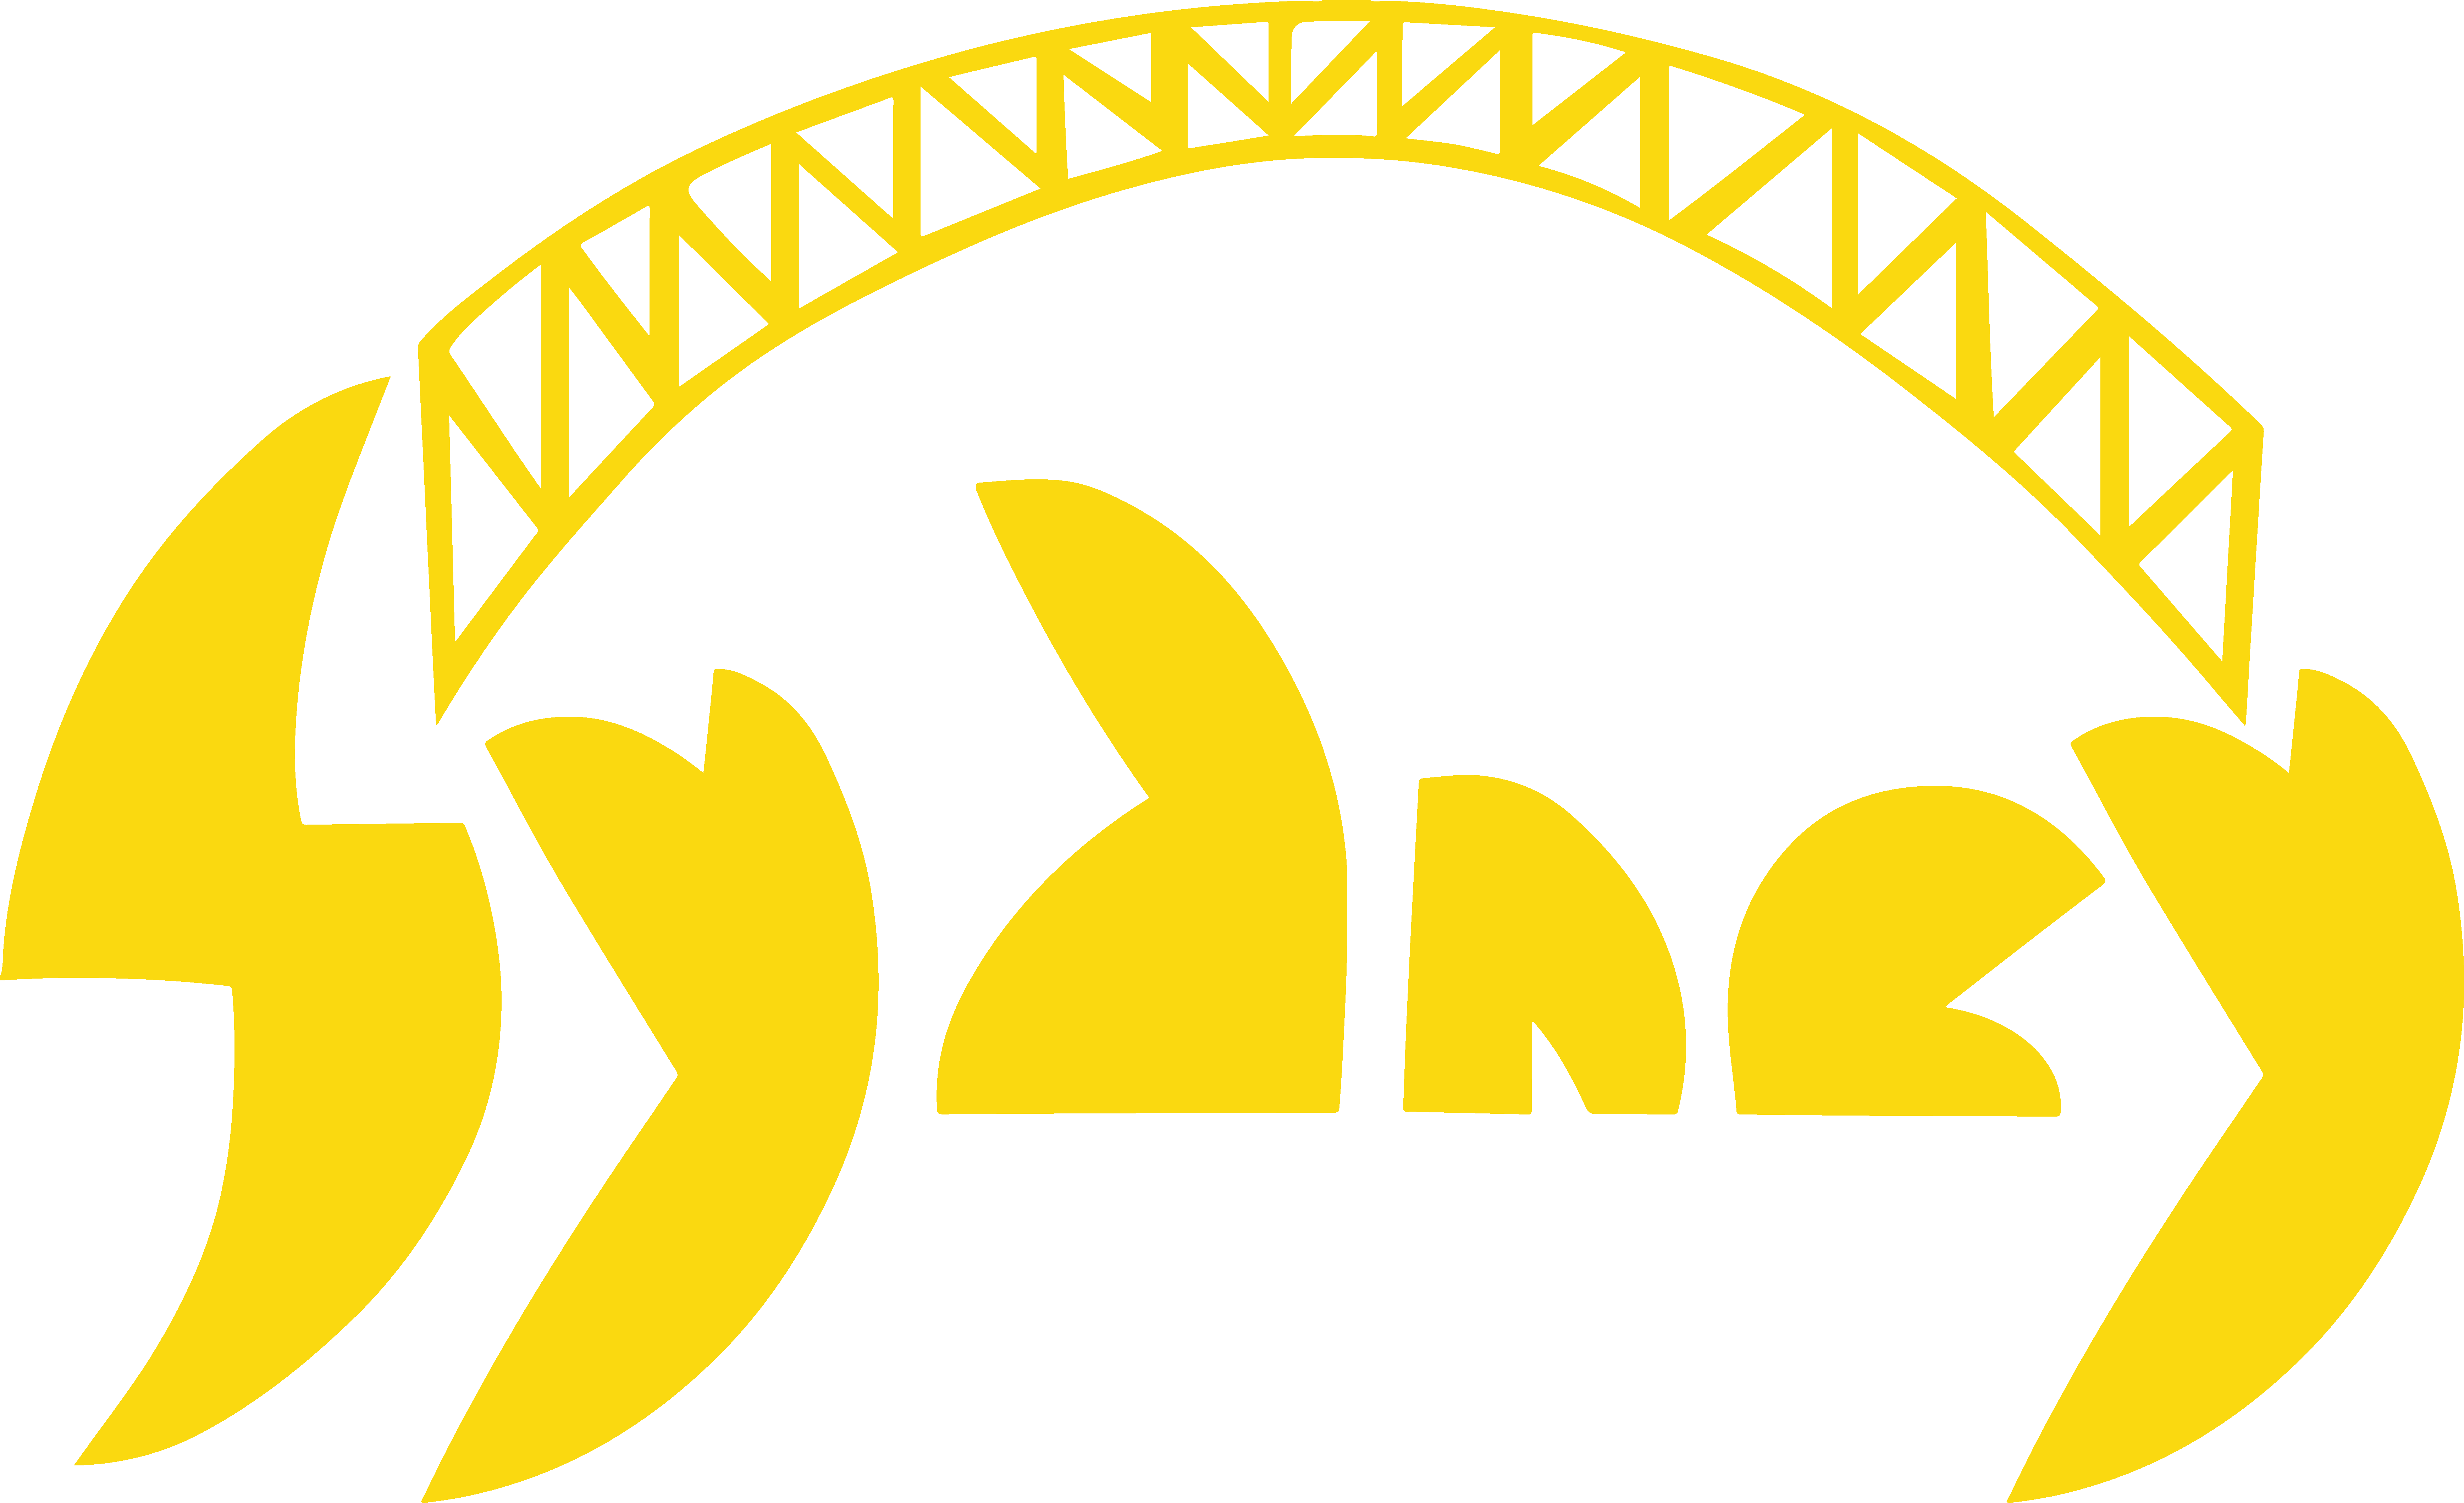 sydney logo